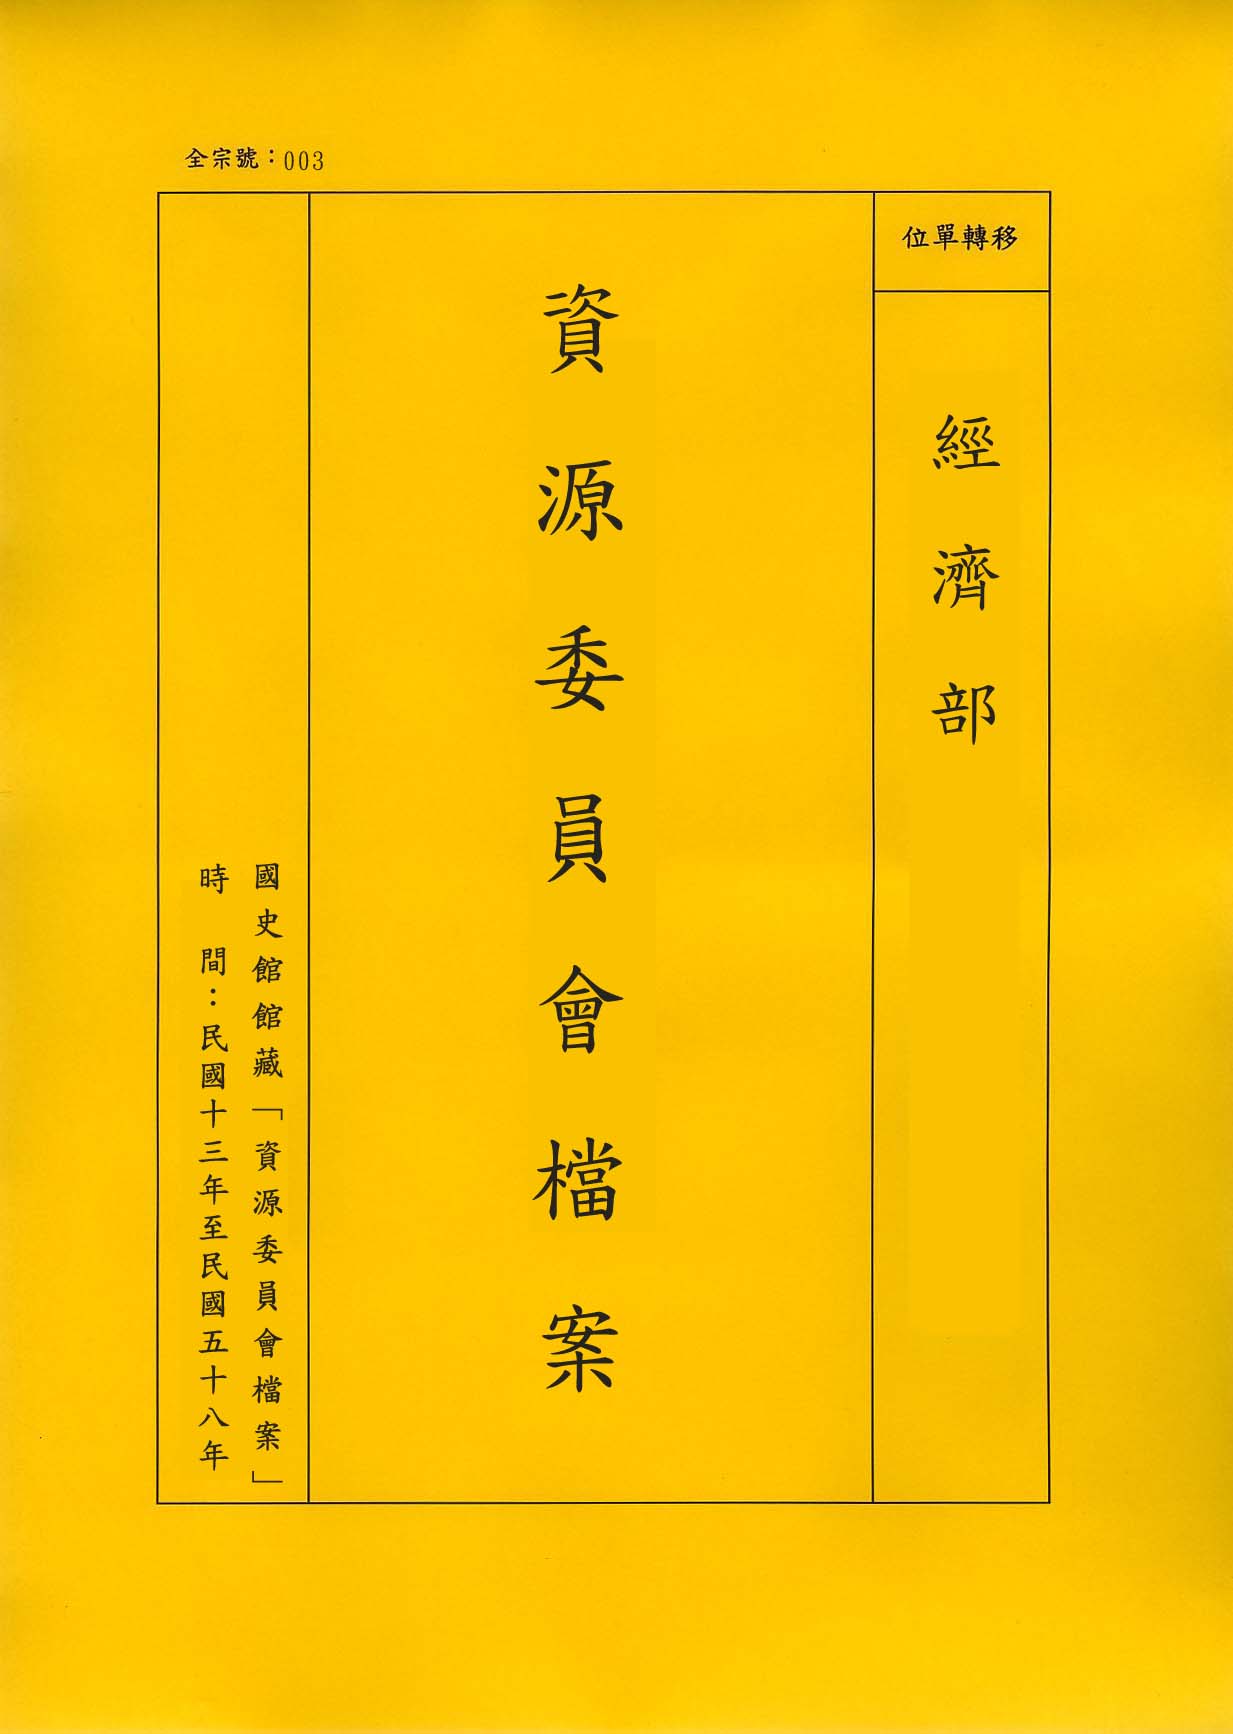 卷名:染織業工廠調查表—上海(四)(003-010306-0439)